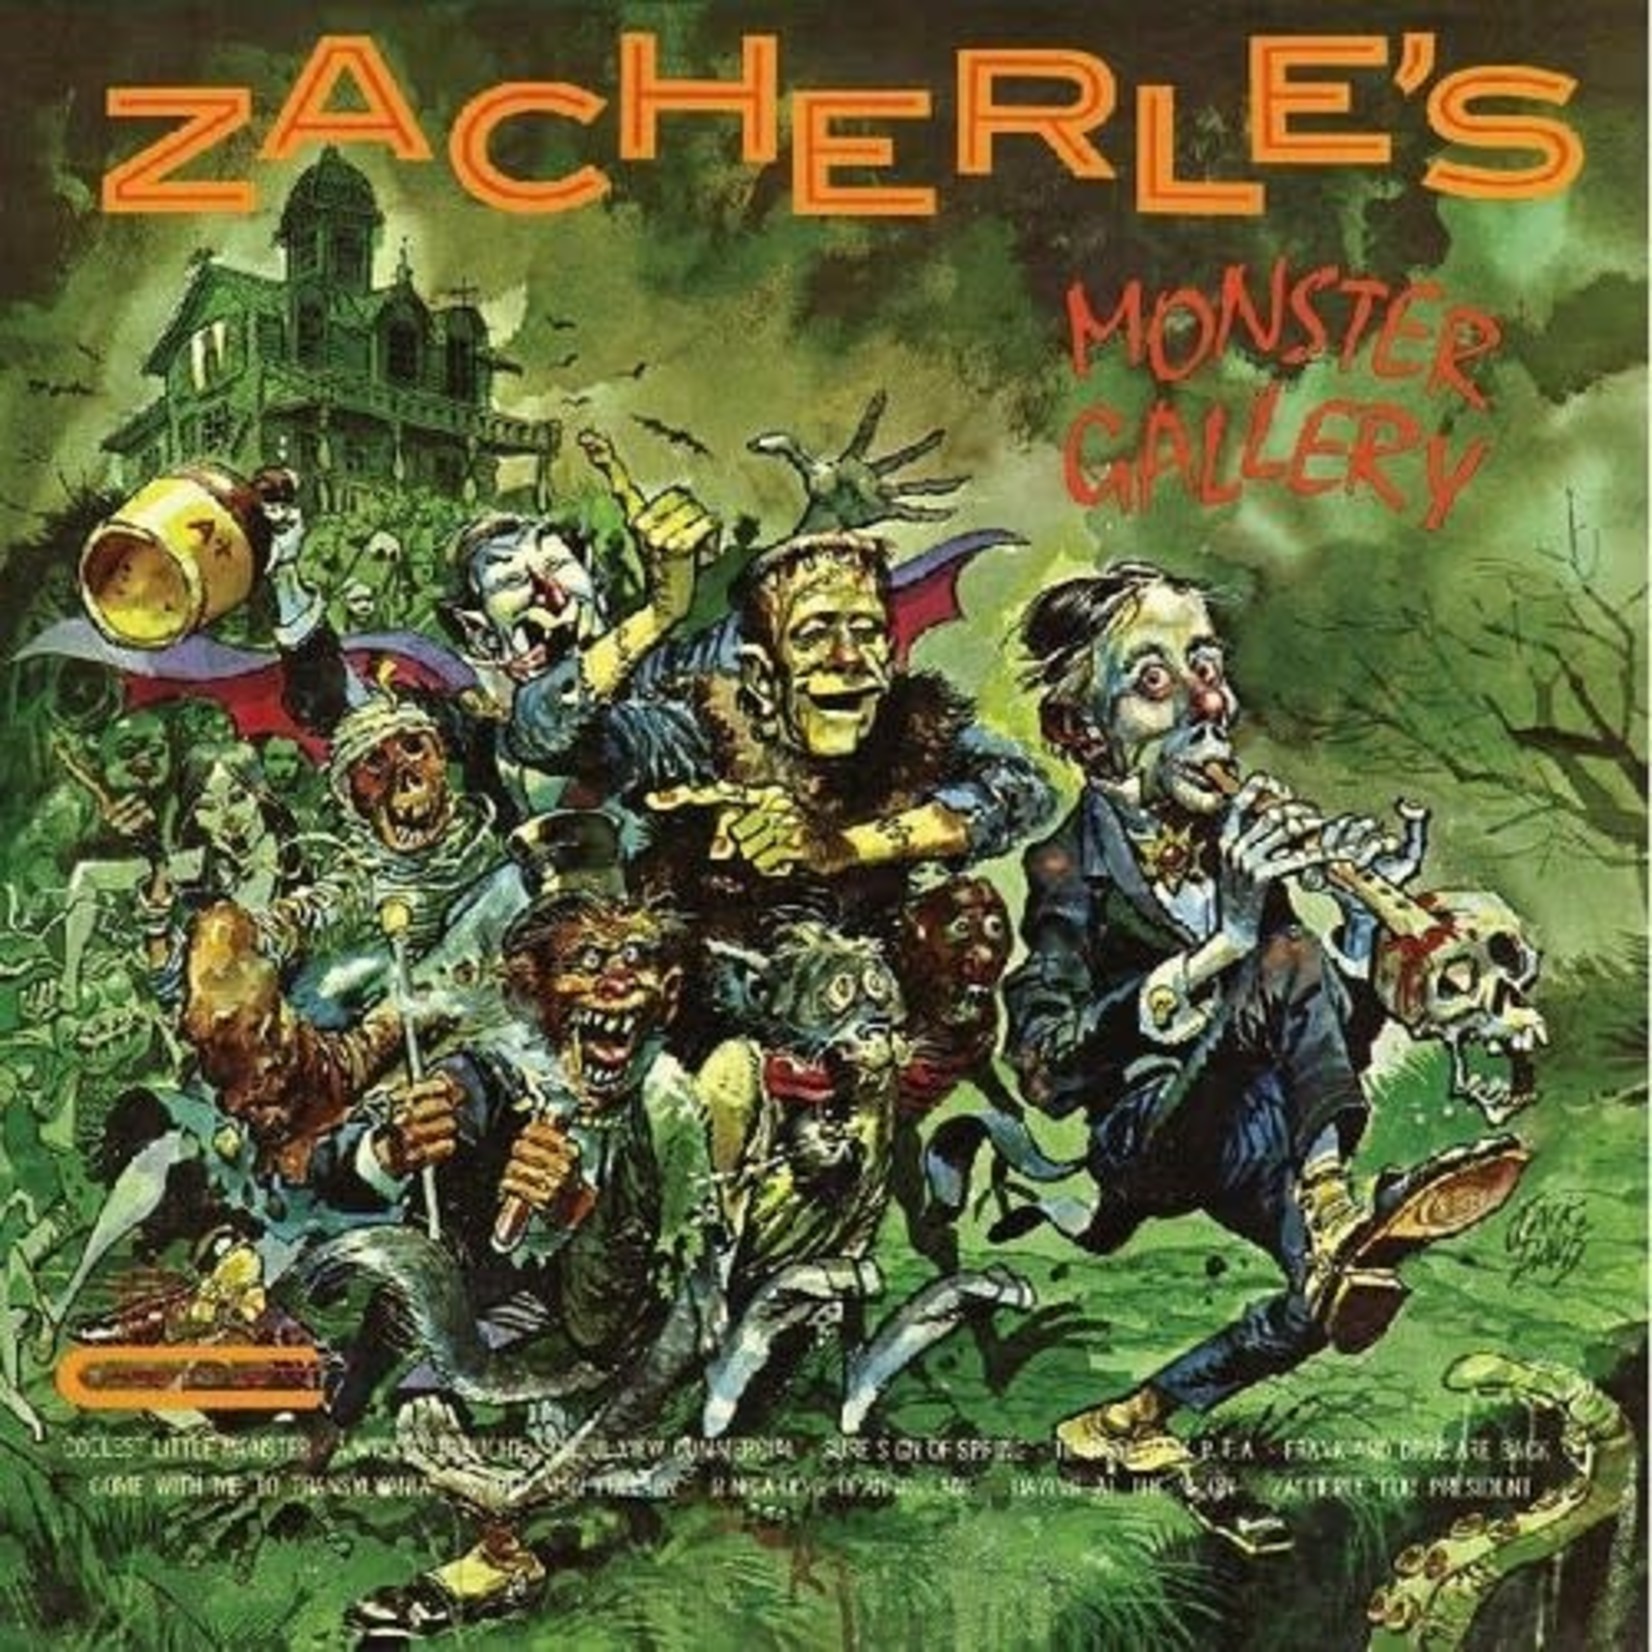 Real Gone John Zacherle - Zacherle's Monster Gallery (LP) [Clear Green Swirl]